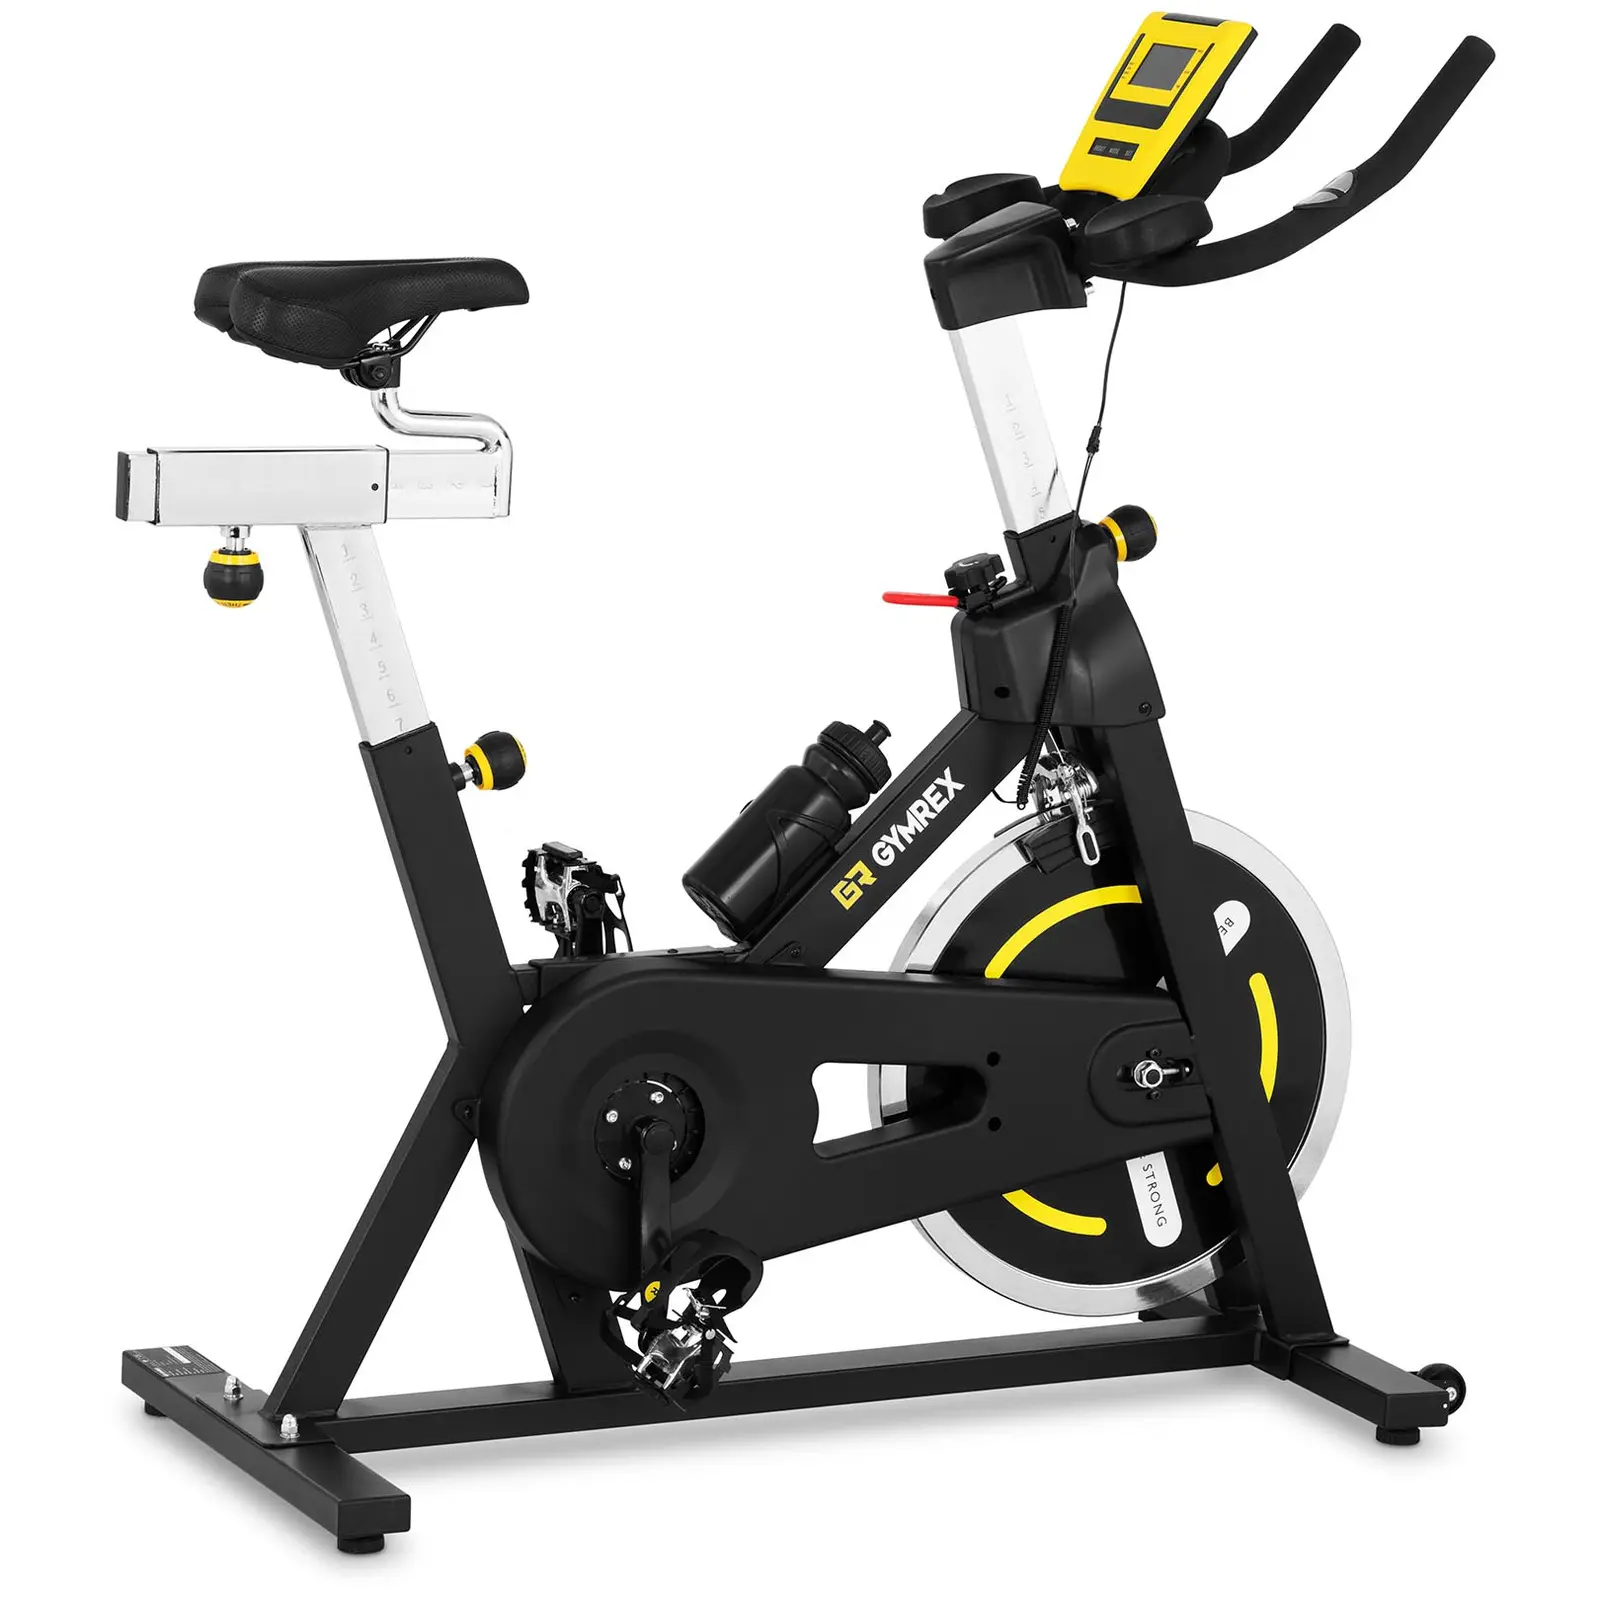 Motionscykel - Svänghjul 18 kg - Upp till 100 kg - LCD